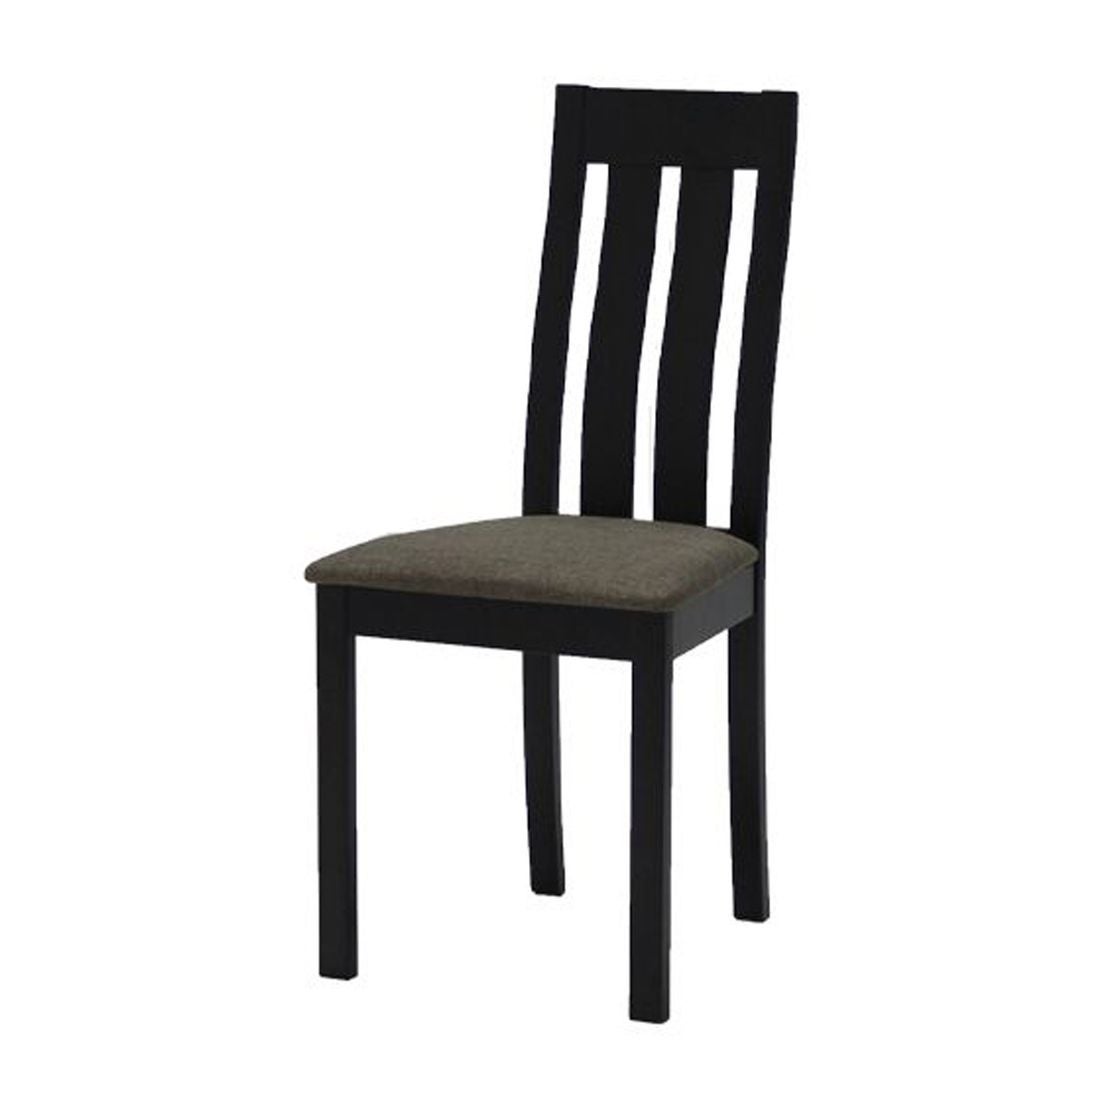 เก้าอี้ทานอาหาร เก้าอี้ไม้เบาะผ้า รุ่น Envo สีสีเข้มลายไม้ธรรมชาติ-SB Design Square